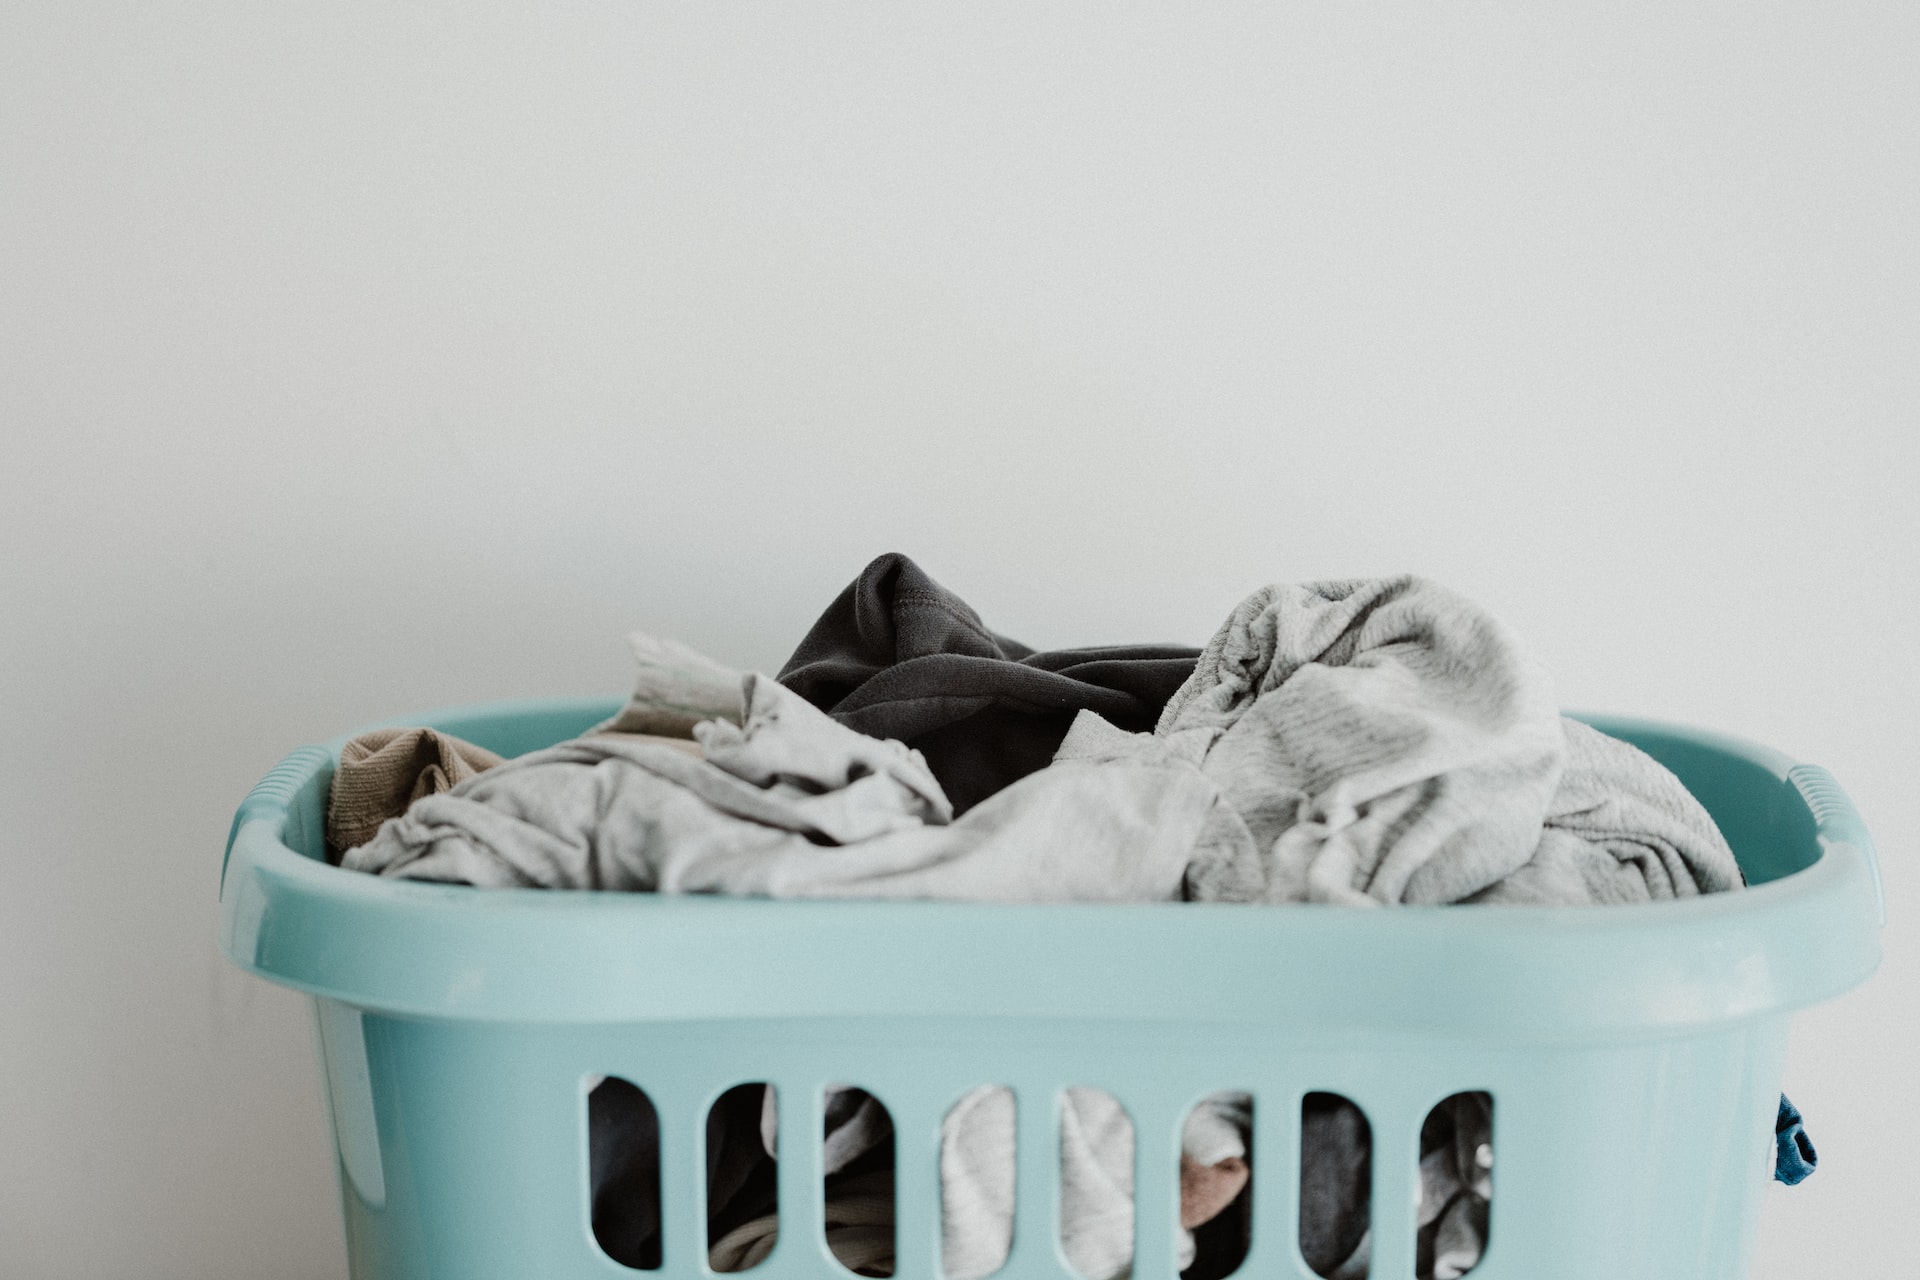 Basket of laundry.